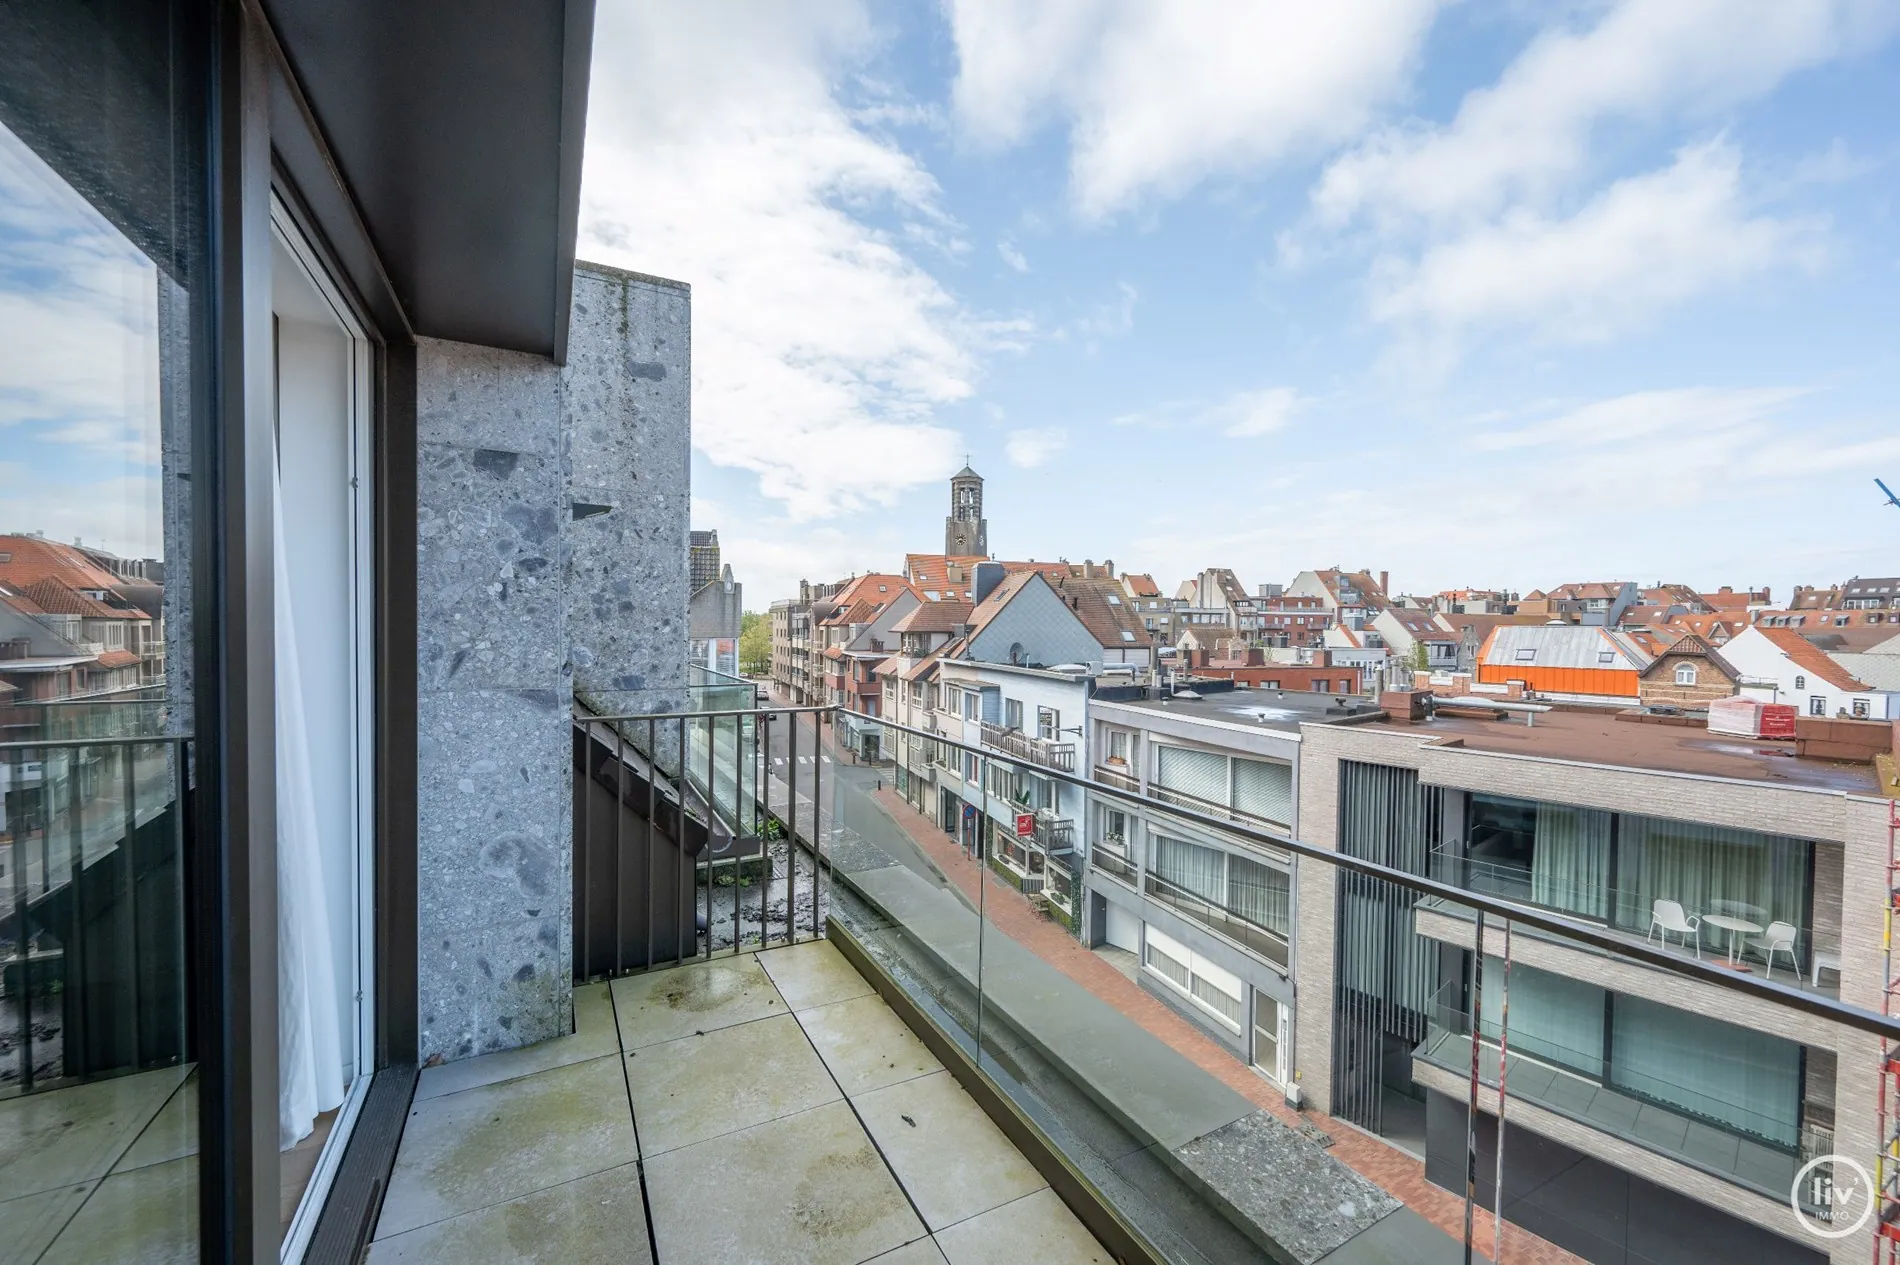 Magnifique appartement en duplex avec 2 chambres à proximité du centre commercial de Knokke (avec possibilité d'acheter un garage intégré).